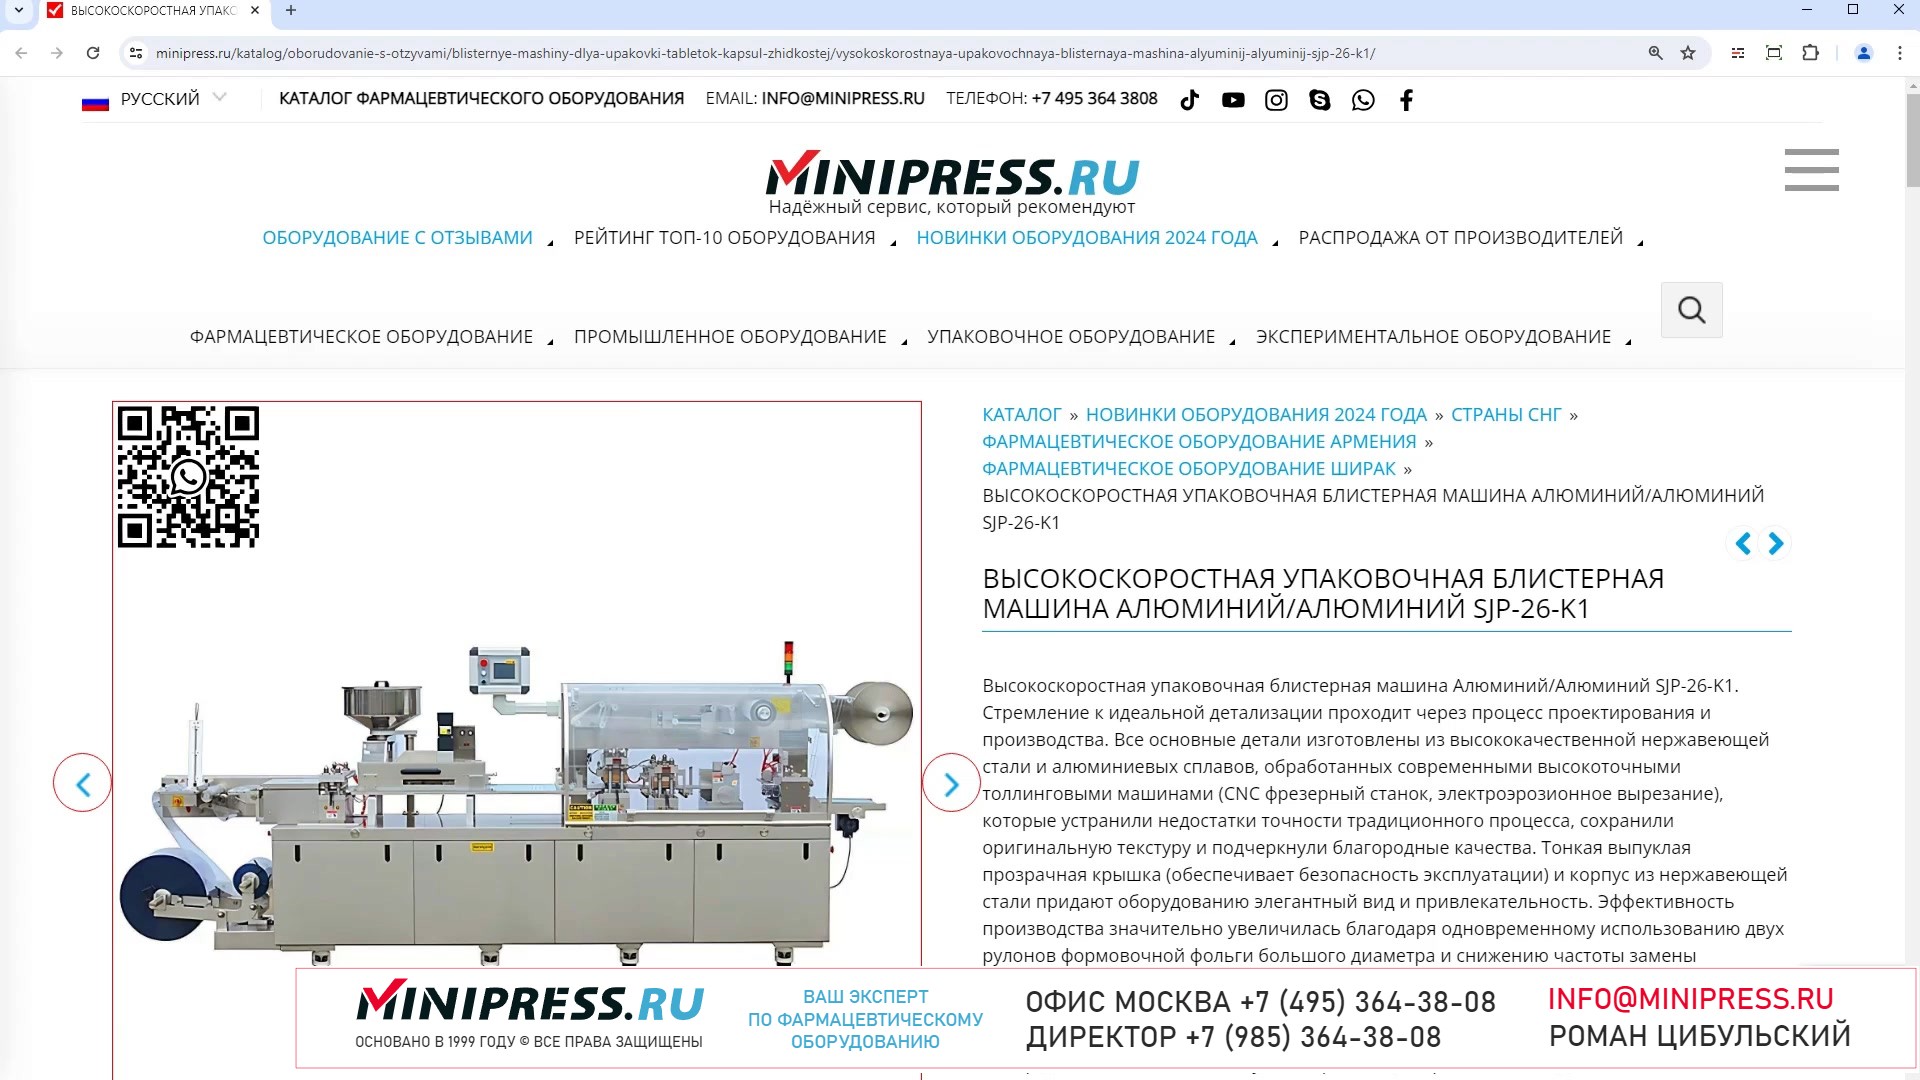 Minipress.ru Высокоскоростная упаковочная блистерная машина АлюминийАлюминий SJP-26-K1